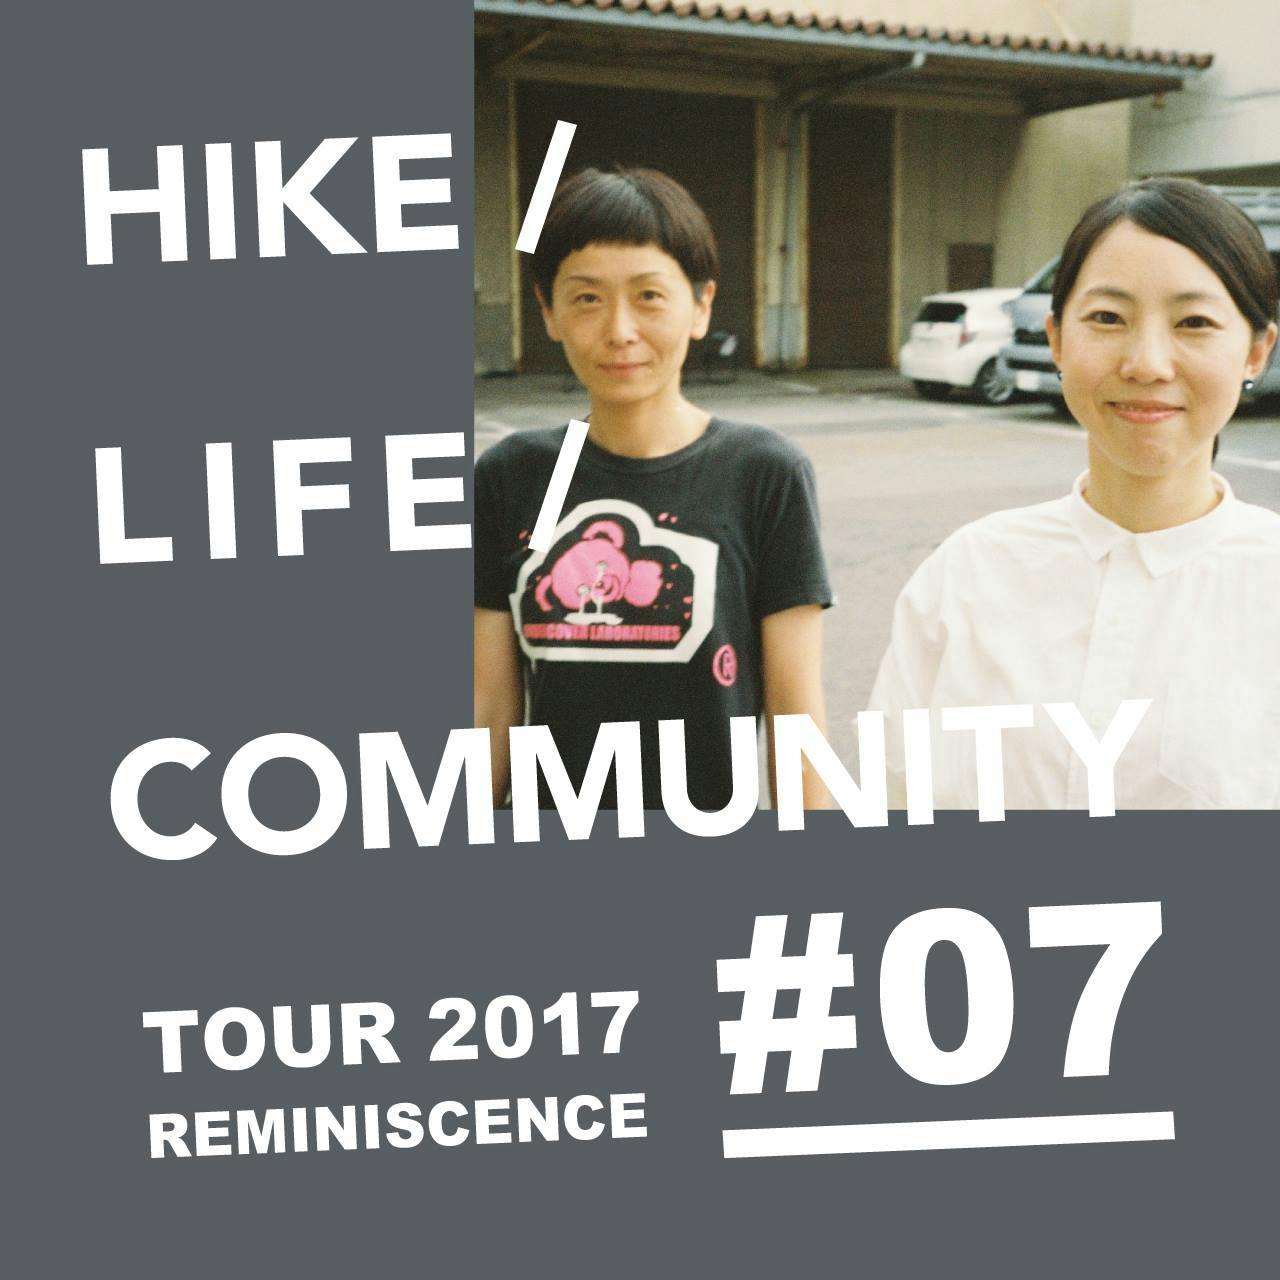 HIKE / LIFE / COMMUNITY TOUR 2017 REMINISCENCE #07 yukariRo（リトルプレス）